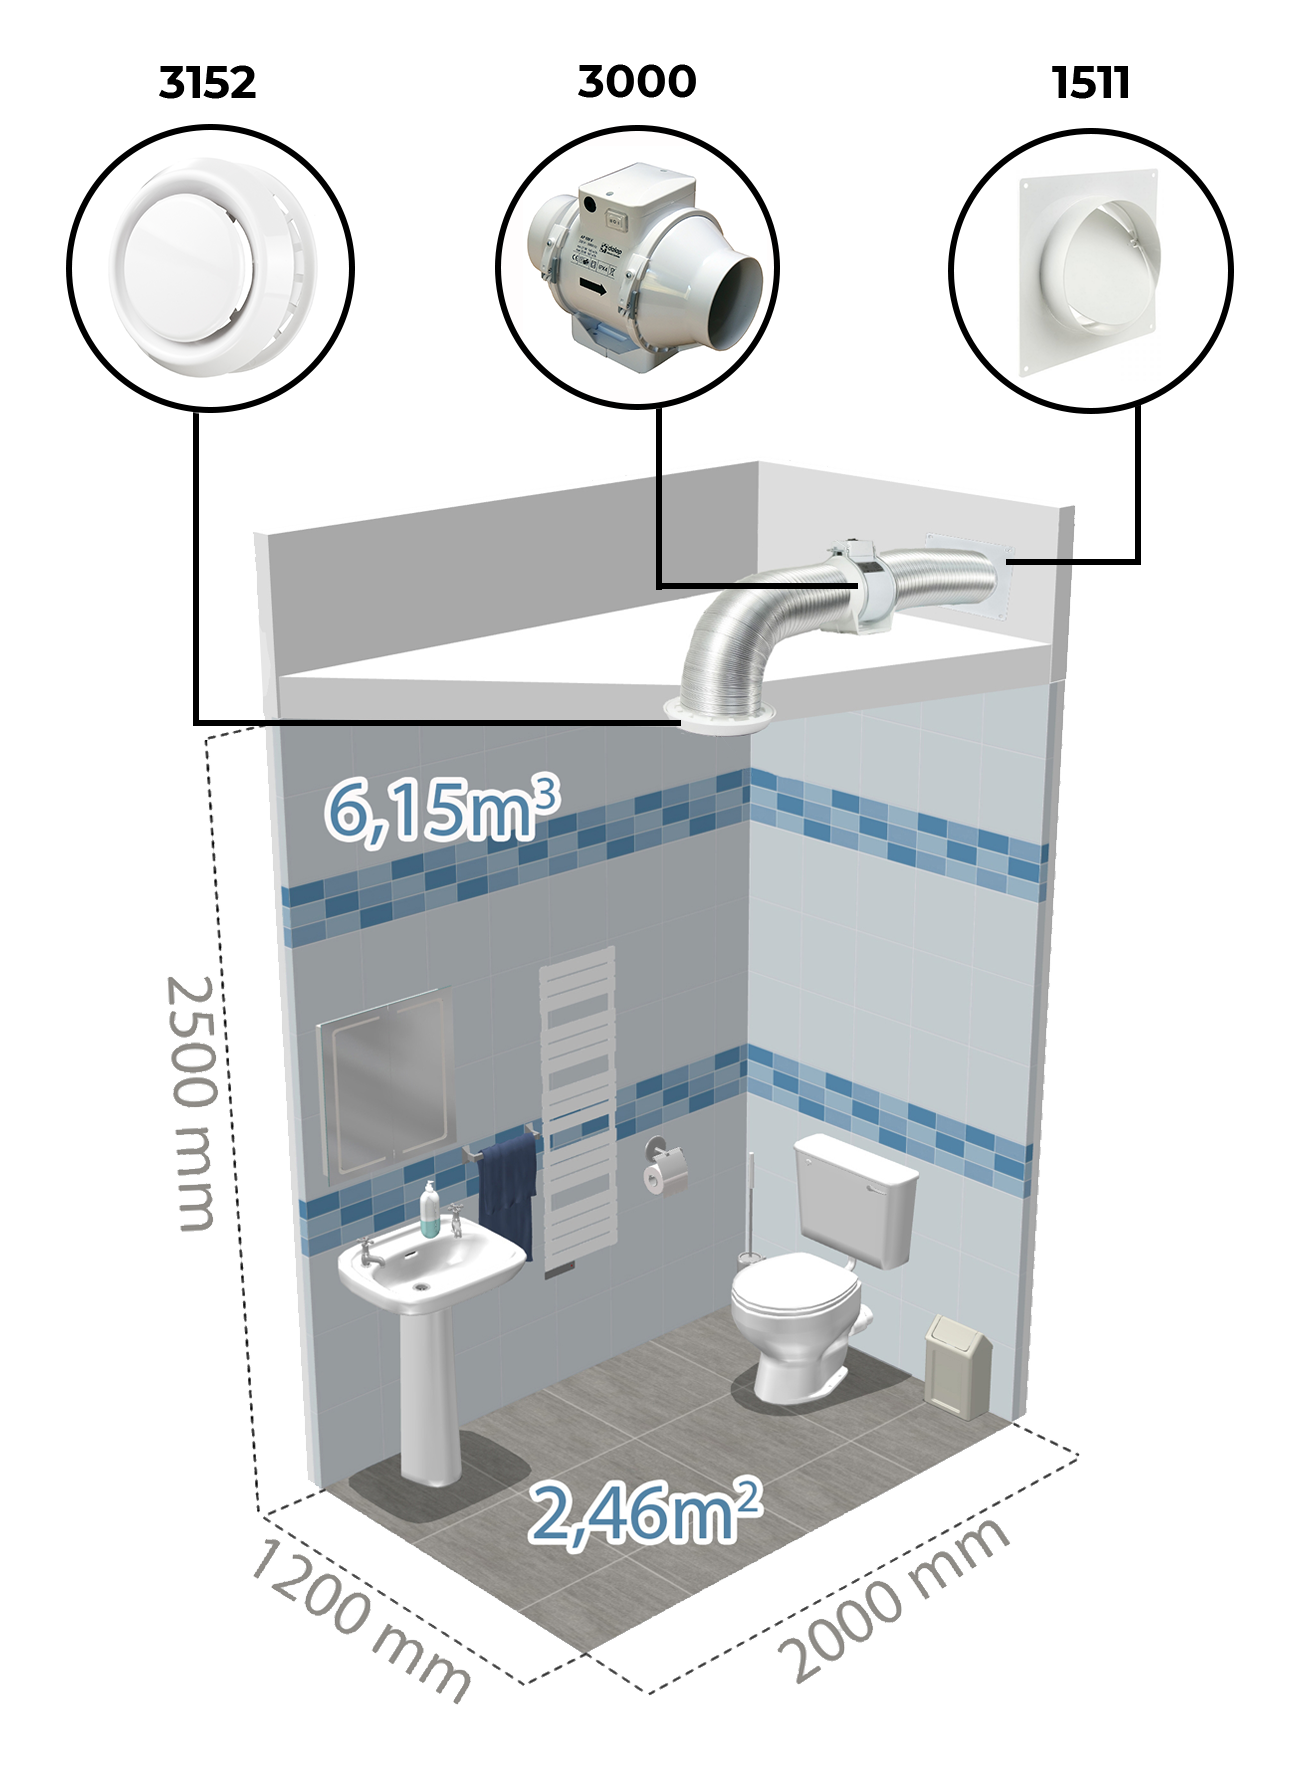 Példa légtechnikai berendezés felhasználására WC-ben Dalap AP csőventilátorral.